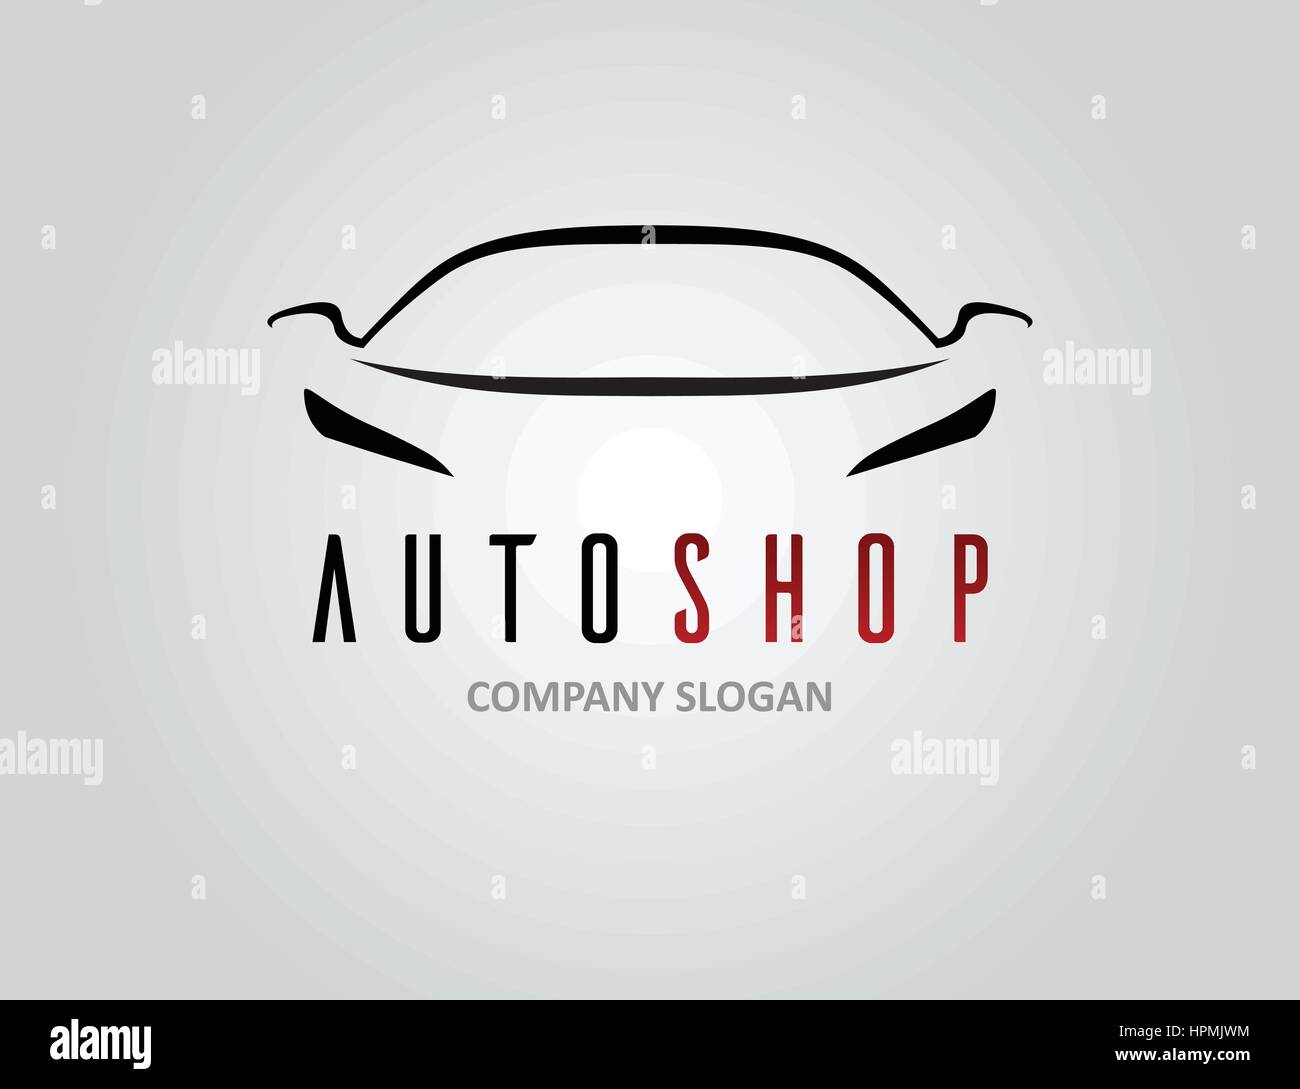 Conception de logo voiture auto shop concept avec l'icône véhicule sport silhouette sur fond gris clair. Vector illustration. Illustration de Vecteur